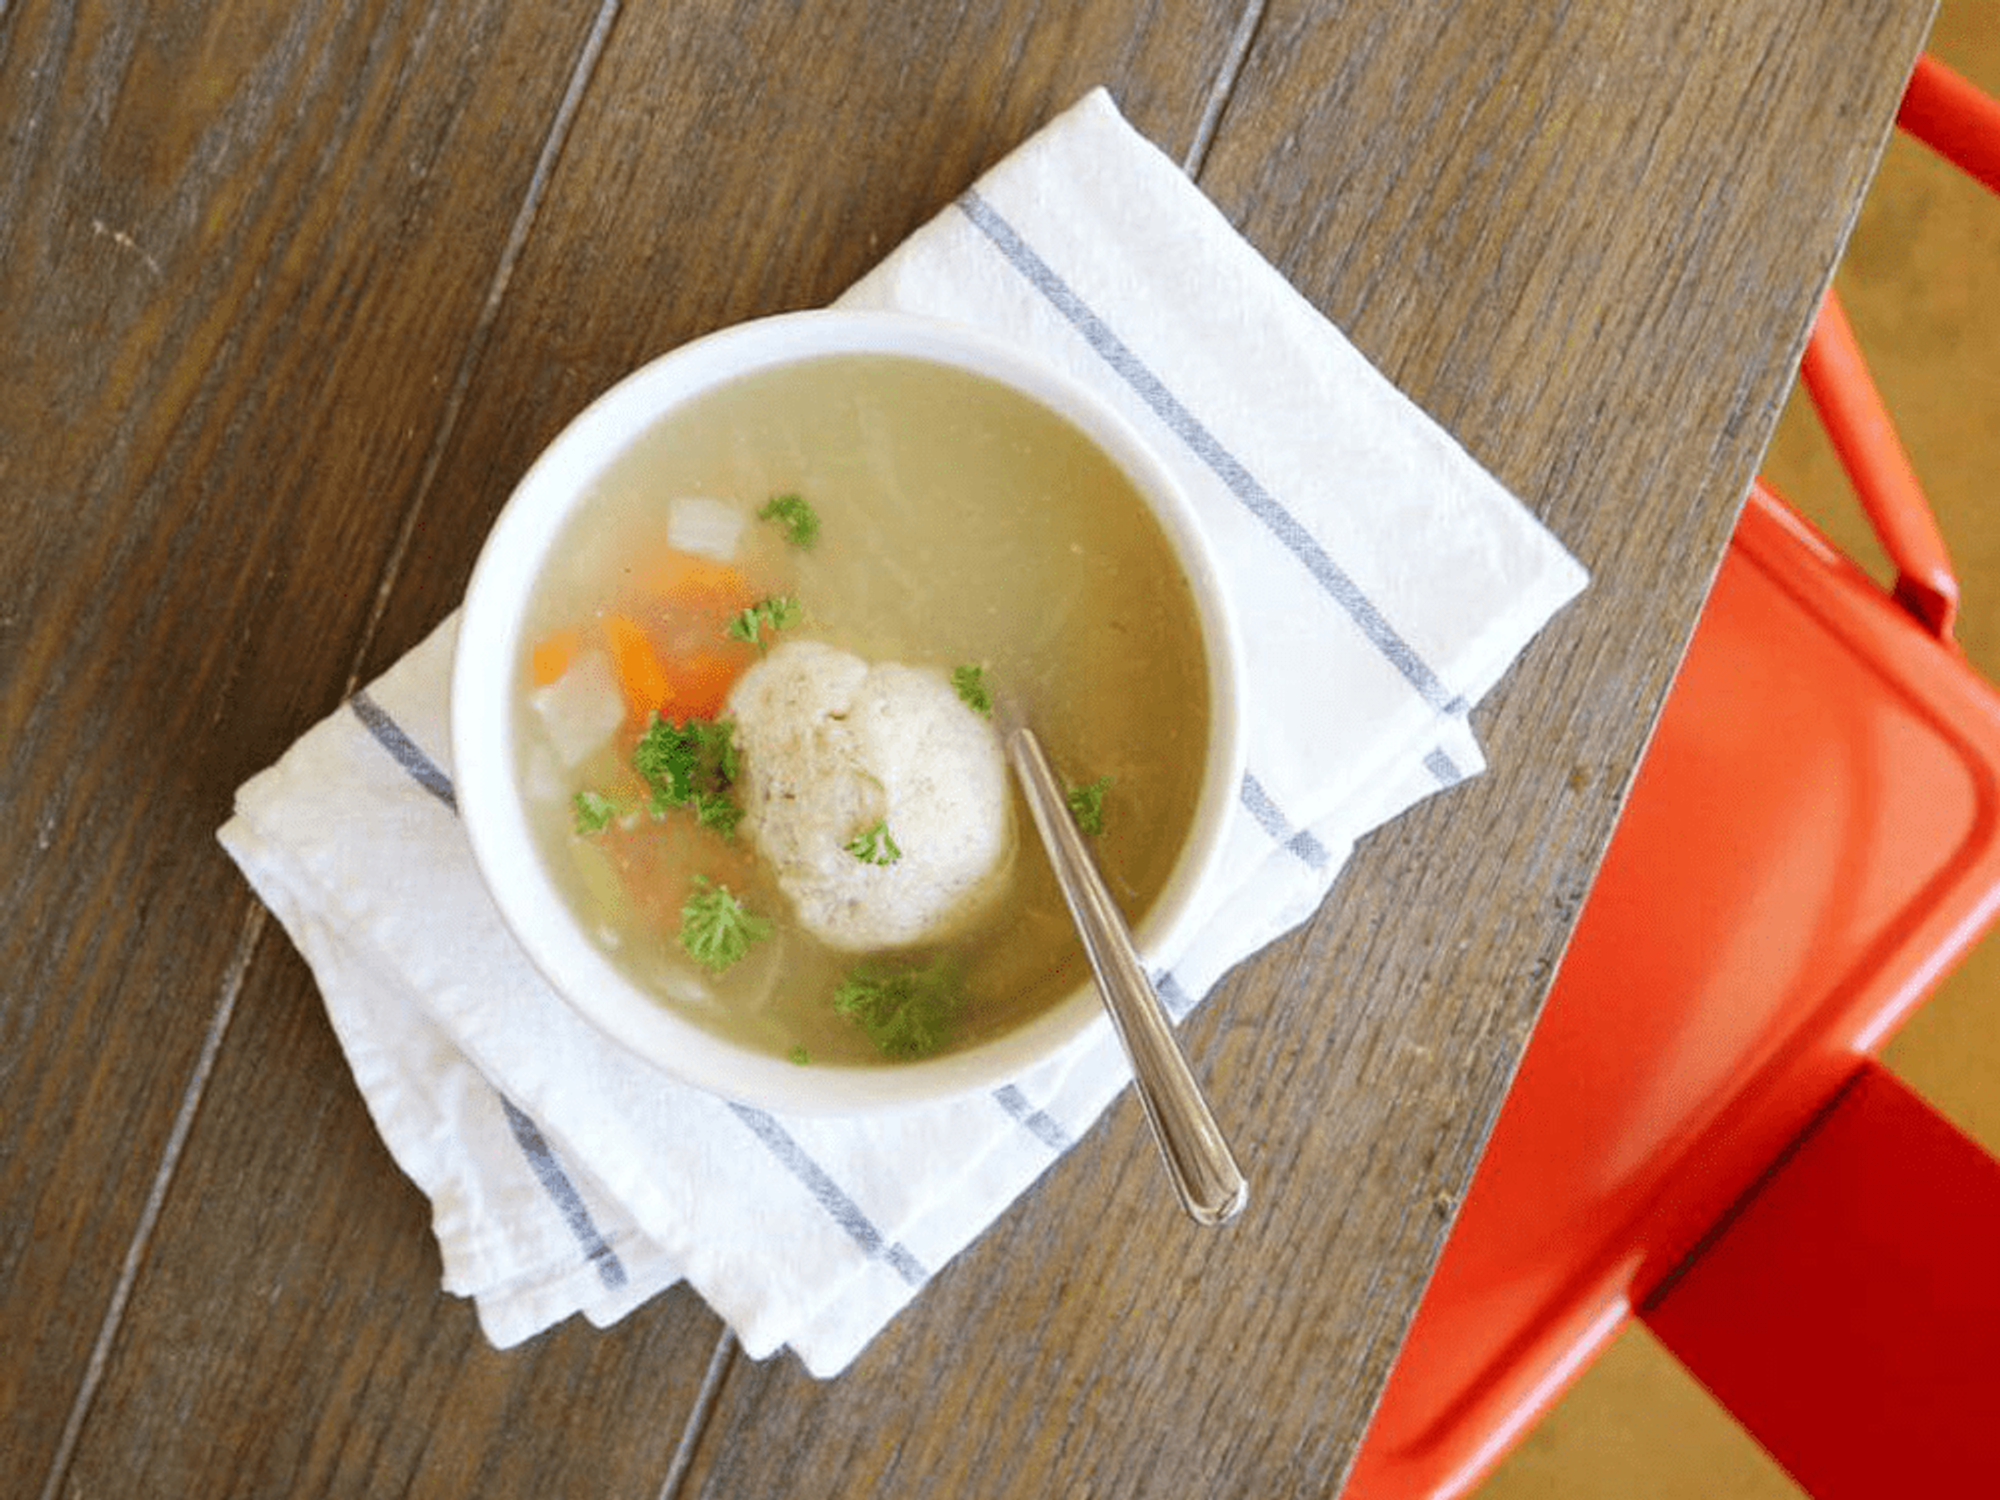 Matzah ball soup by the Soup Peddler